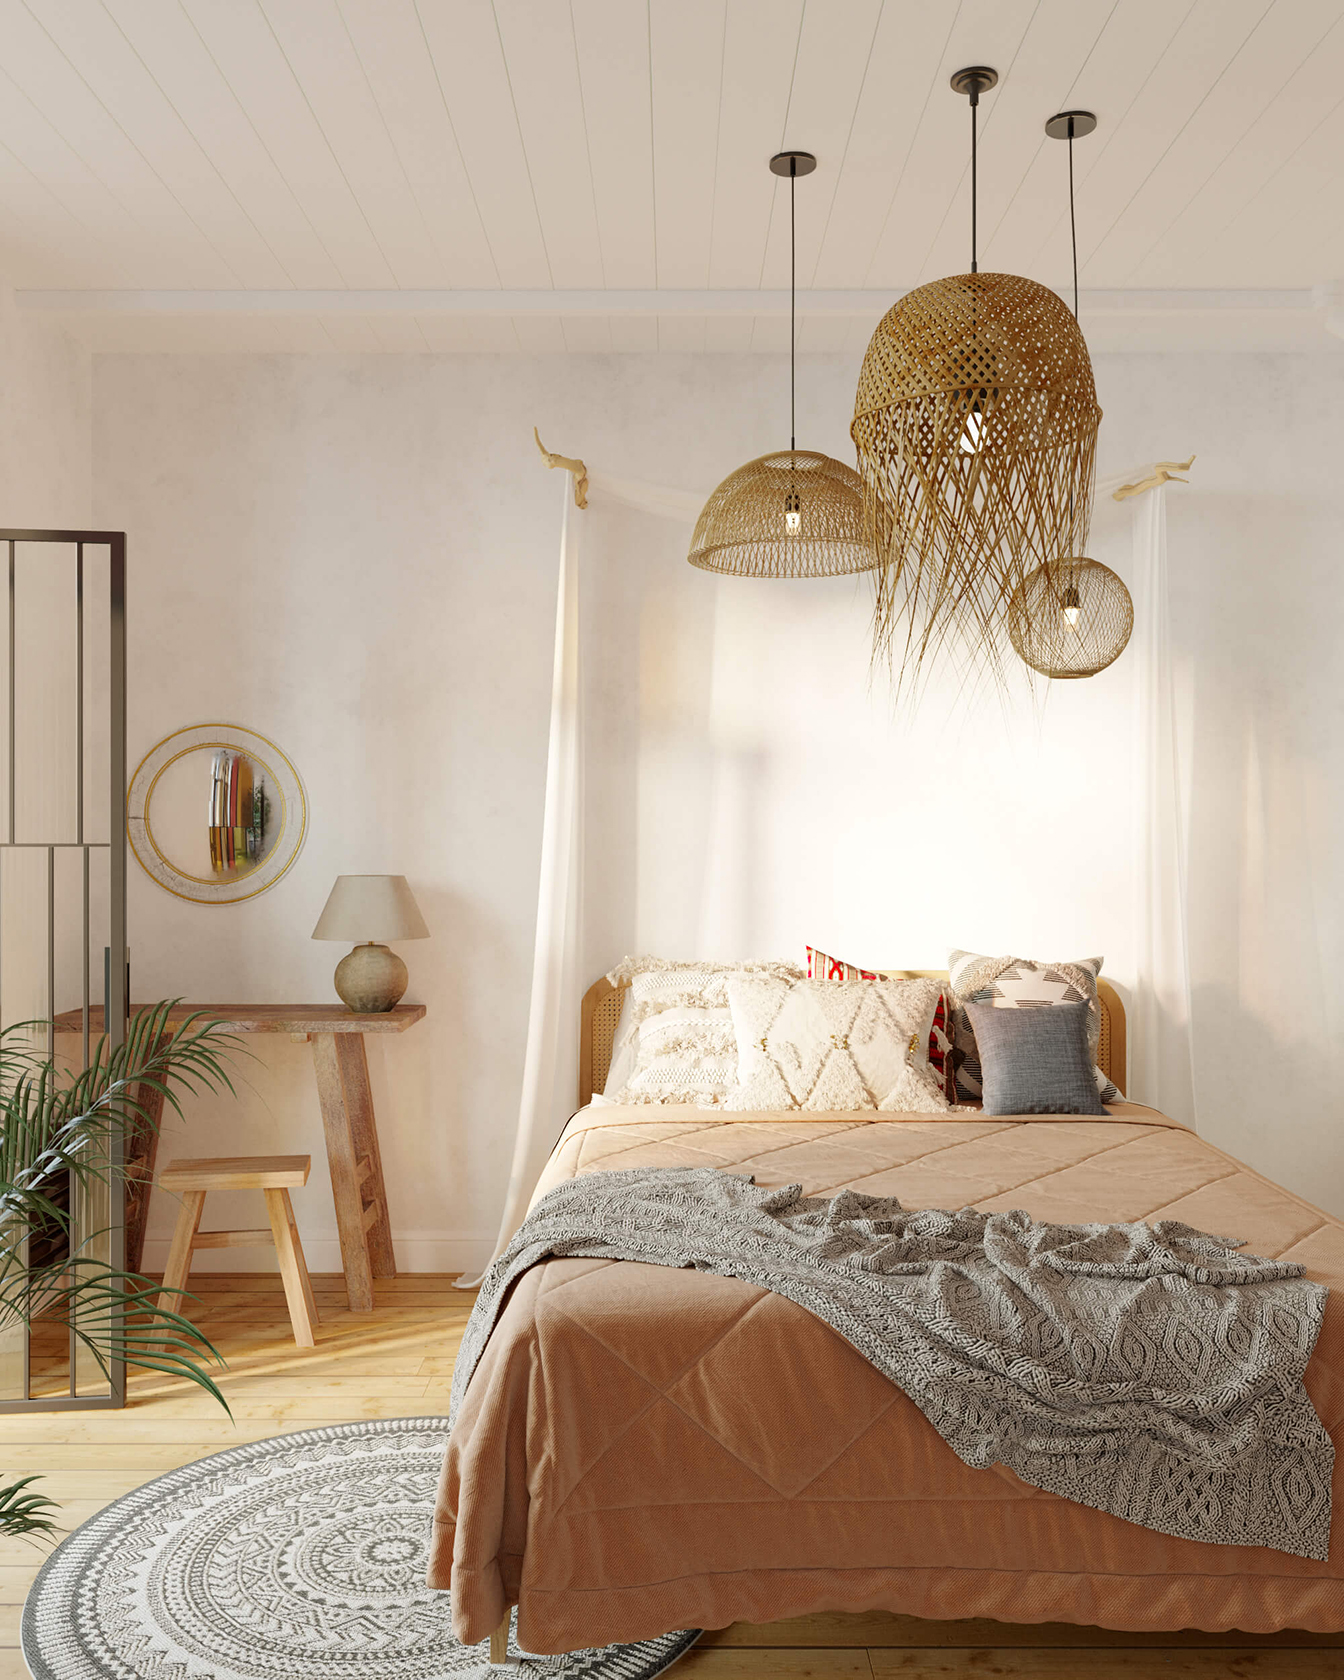 Спальная комната из дизайн проекта "Уютный лофт". Плетёные люстры, разнообразие текстиля, мебель из дерева, аутентичный ковёр